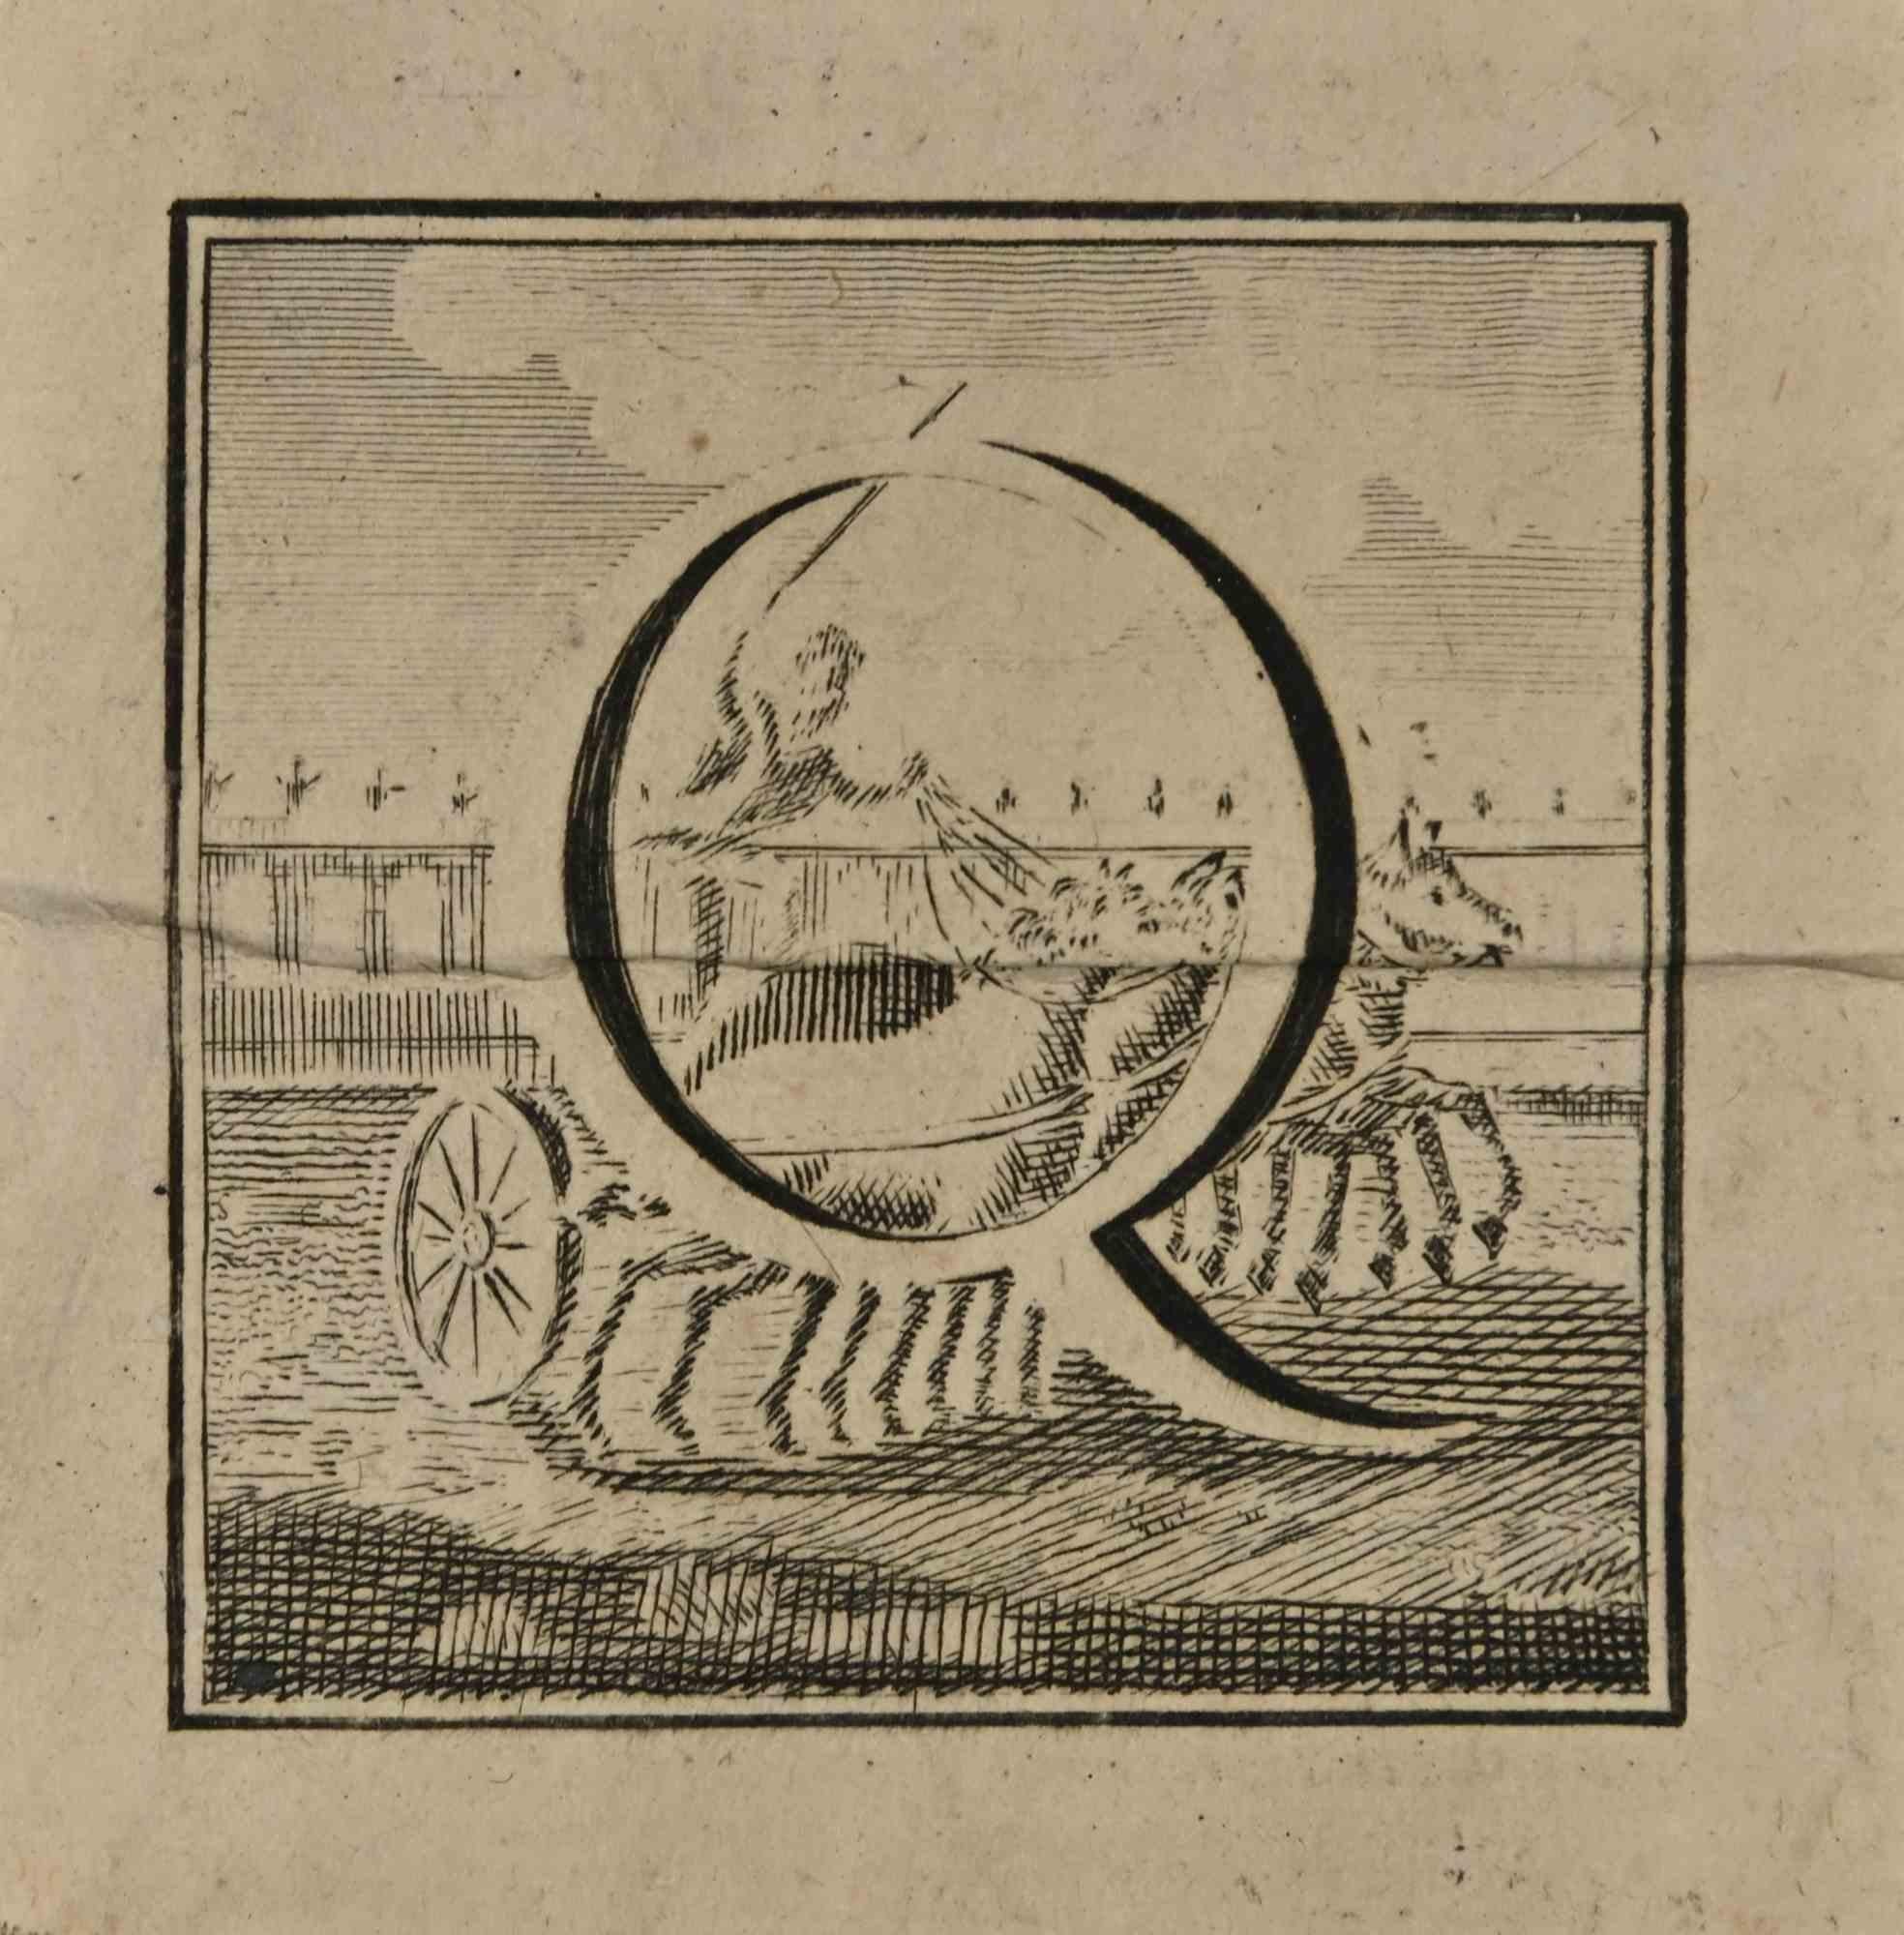 Lettre de l'alphabet Q,  de la série "Antiquités d'Herculanum", est une gravure sur papier réalisée par Luigi Vanvitelli au 18ème siècle.

Bon état avec des pliures.

La gravure appartient à la suite d'estampes "Antiquités d'Herculanum exposées"